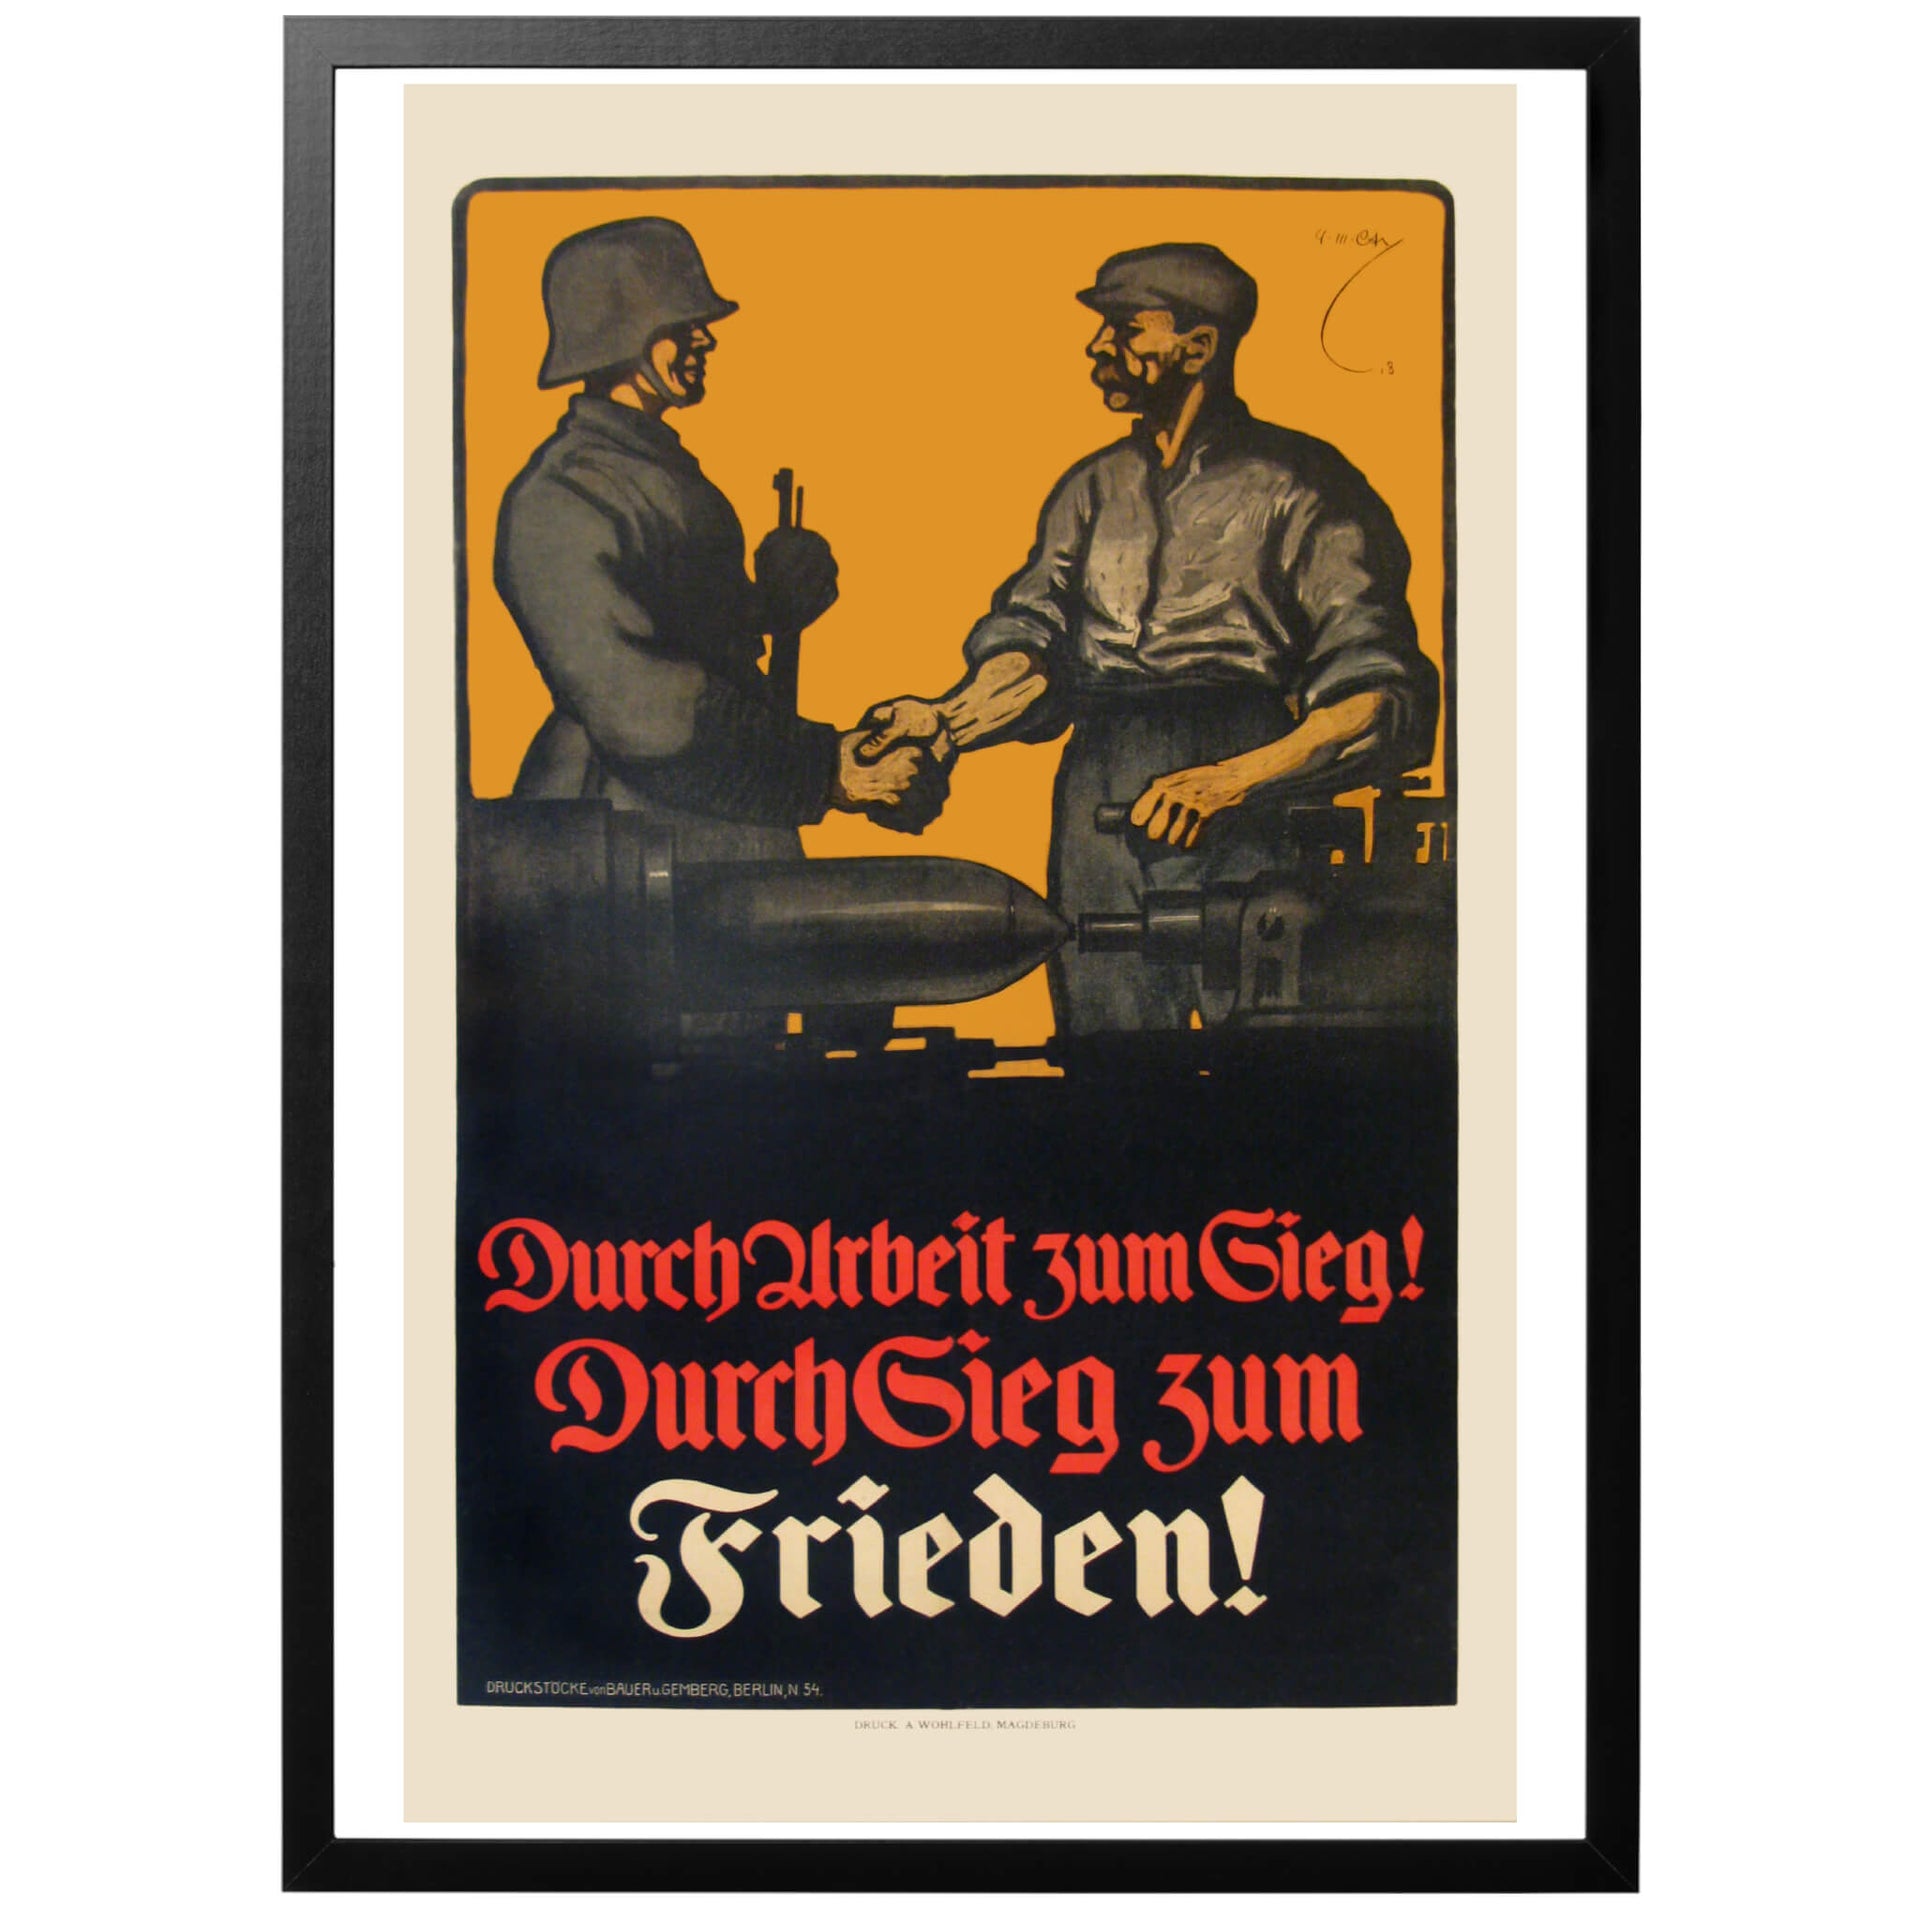 Durch Arbeit zum sieg! Durch Sieg Zum Frieden - Genom arbete till seger! Genom seger till fred. Tysk första världskriget affisch från 1917.